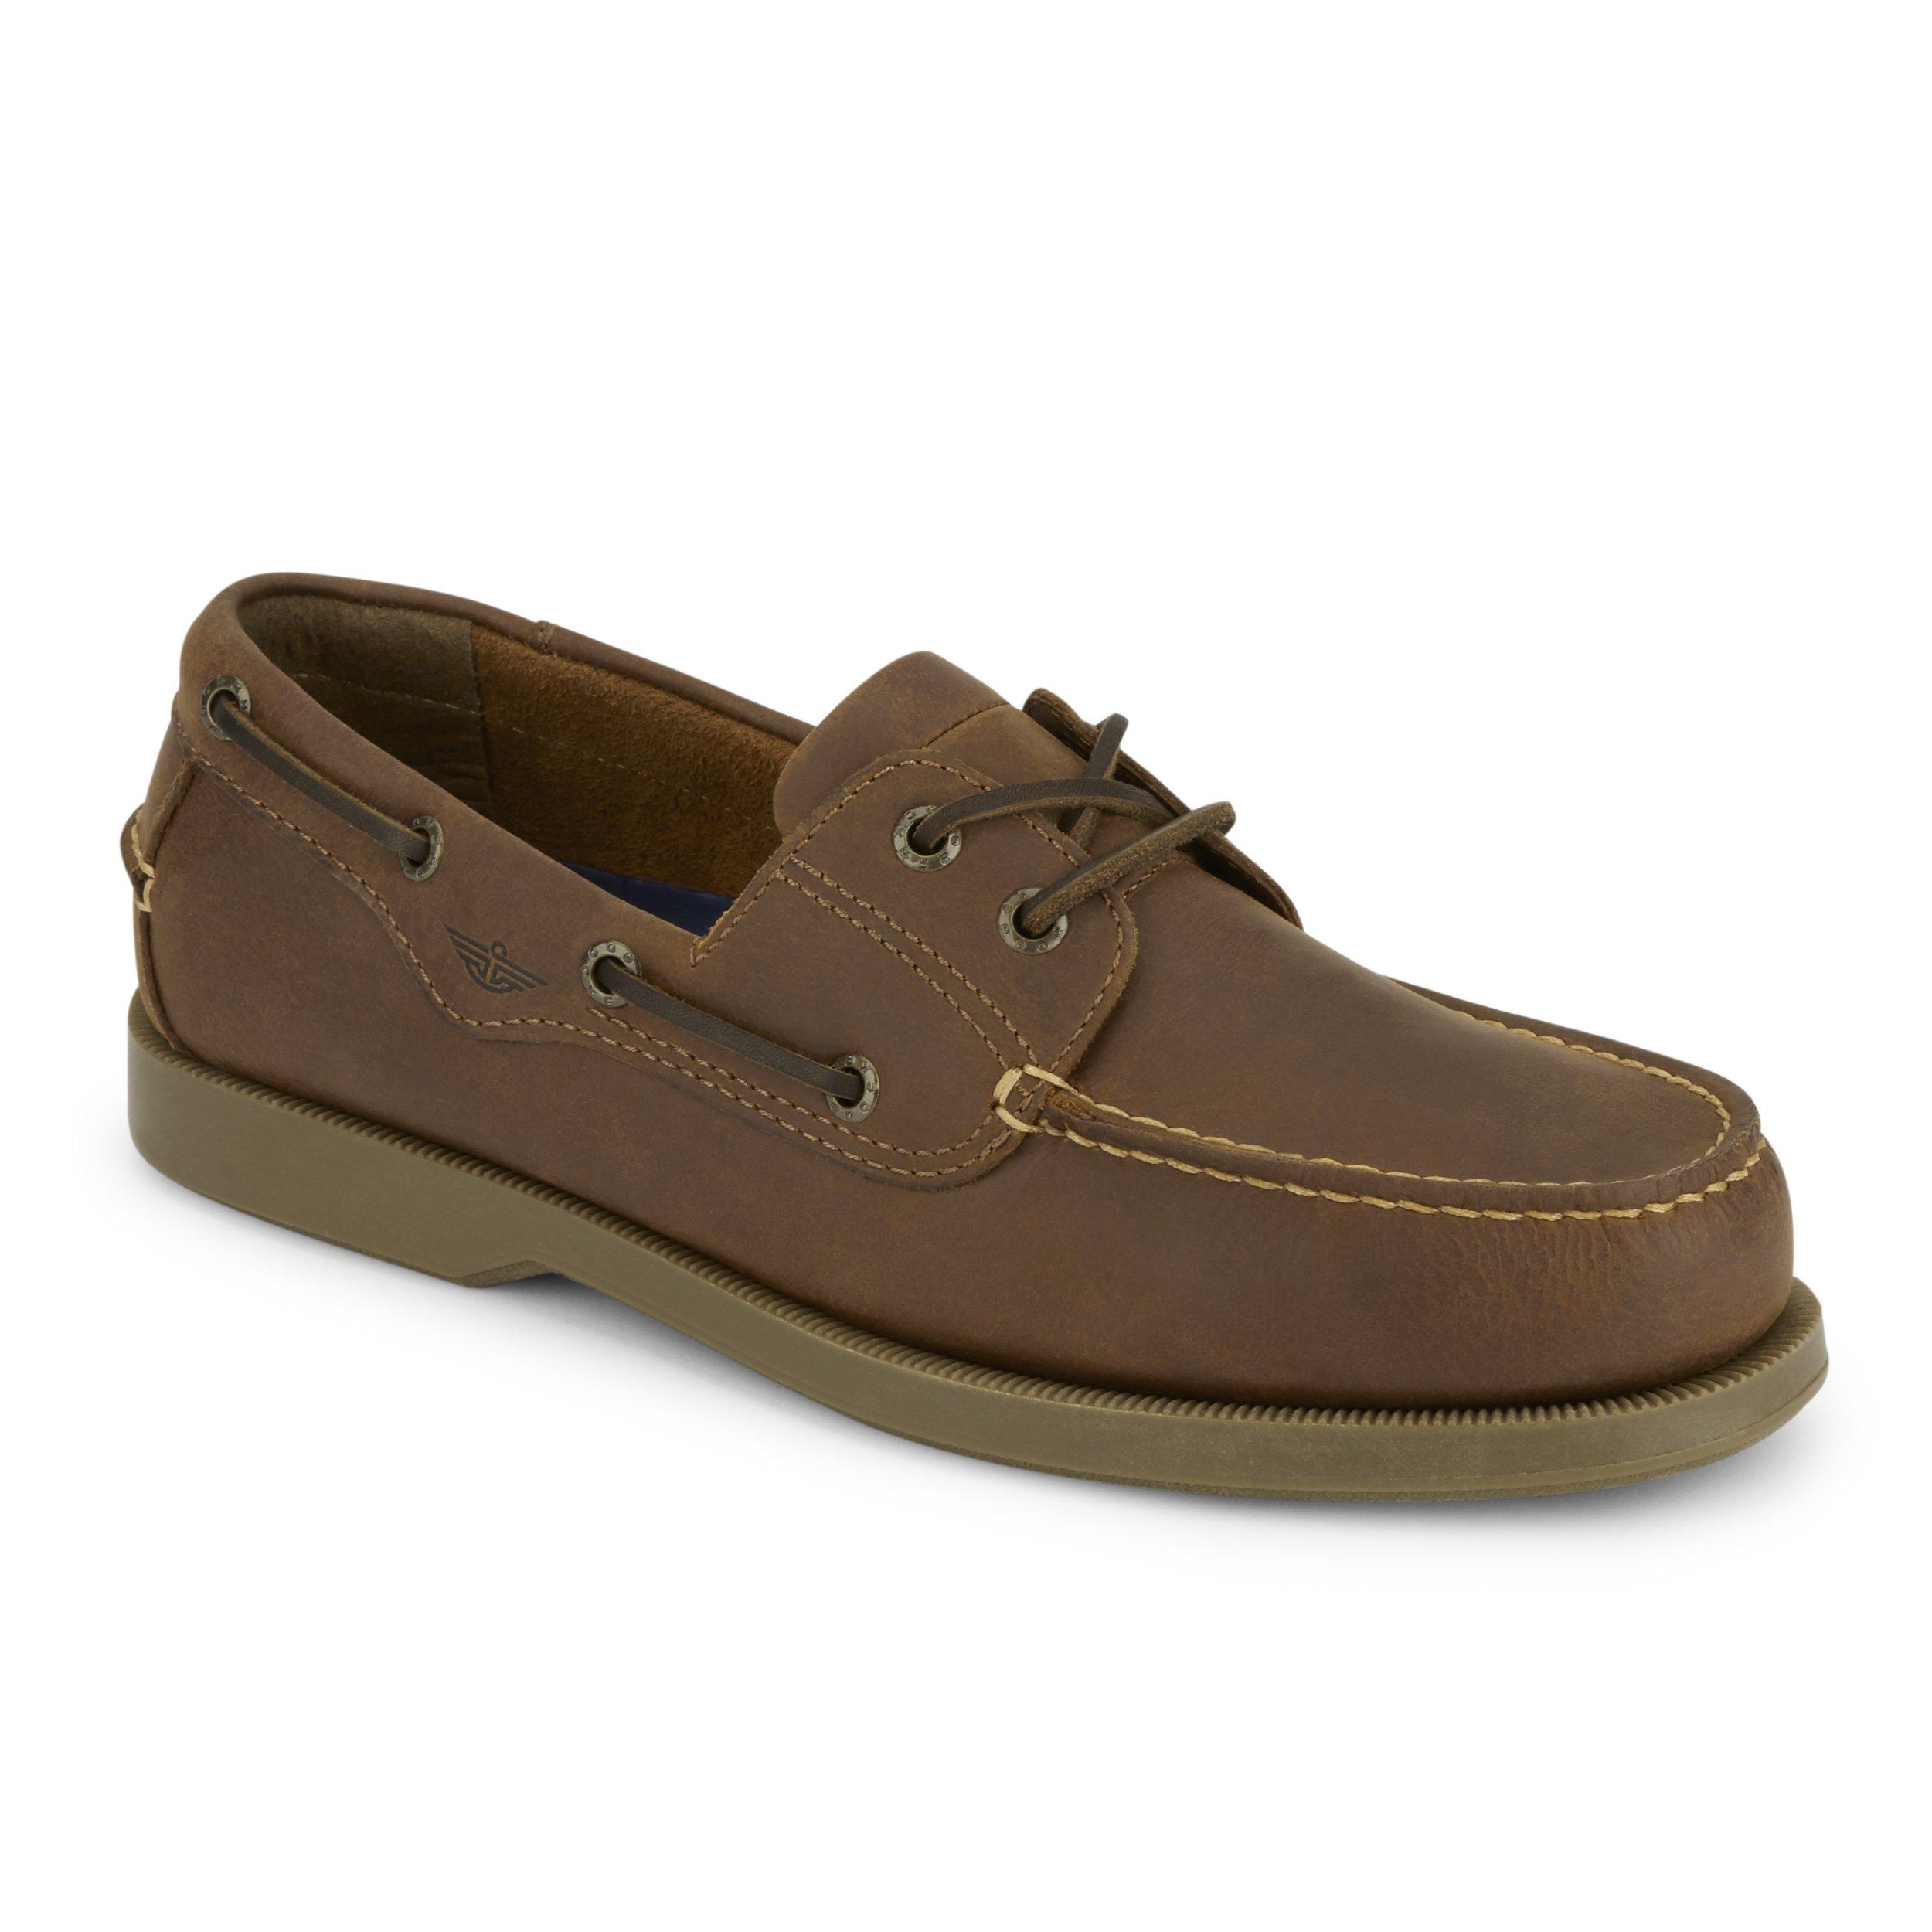 Dockers Leather Castaway - Boat Shoe in Tan (Brown) for Men - Lyst